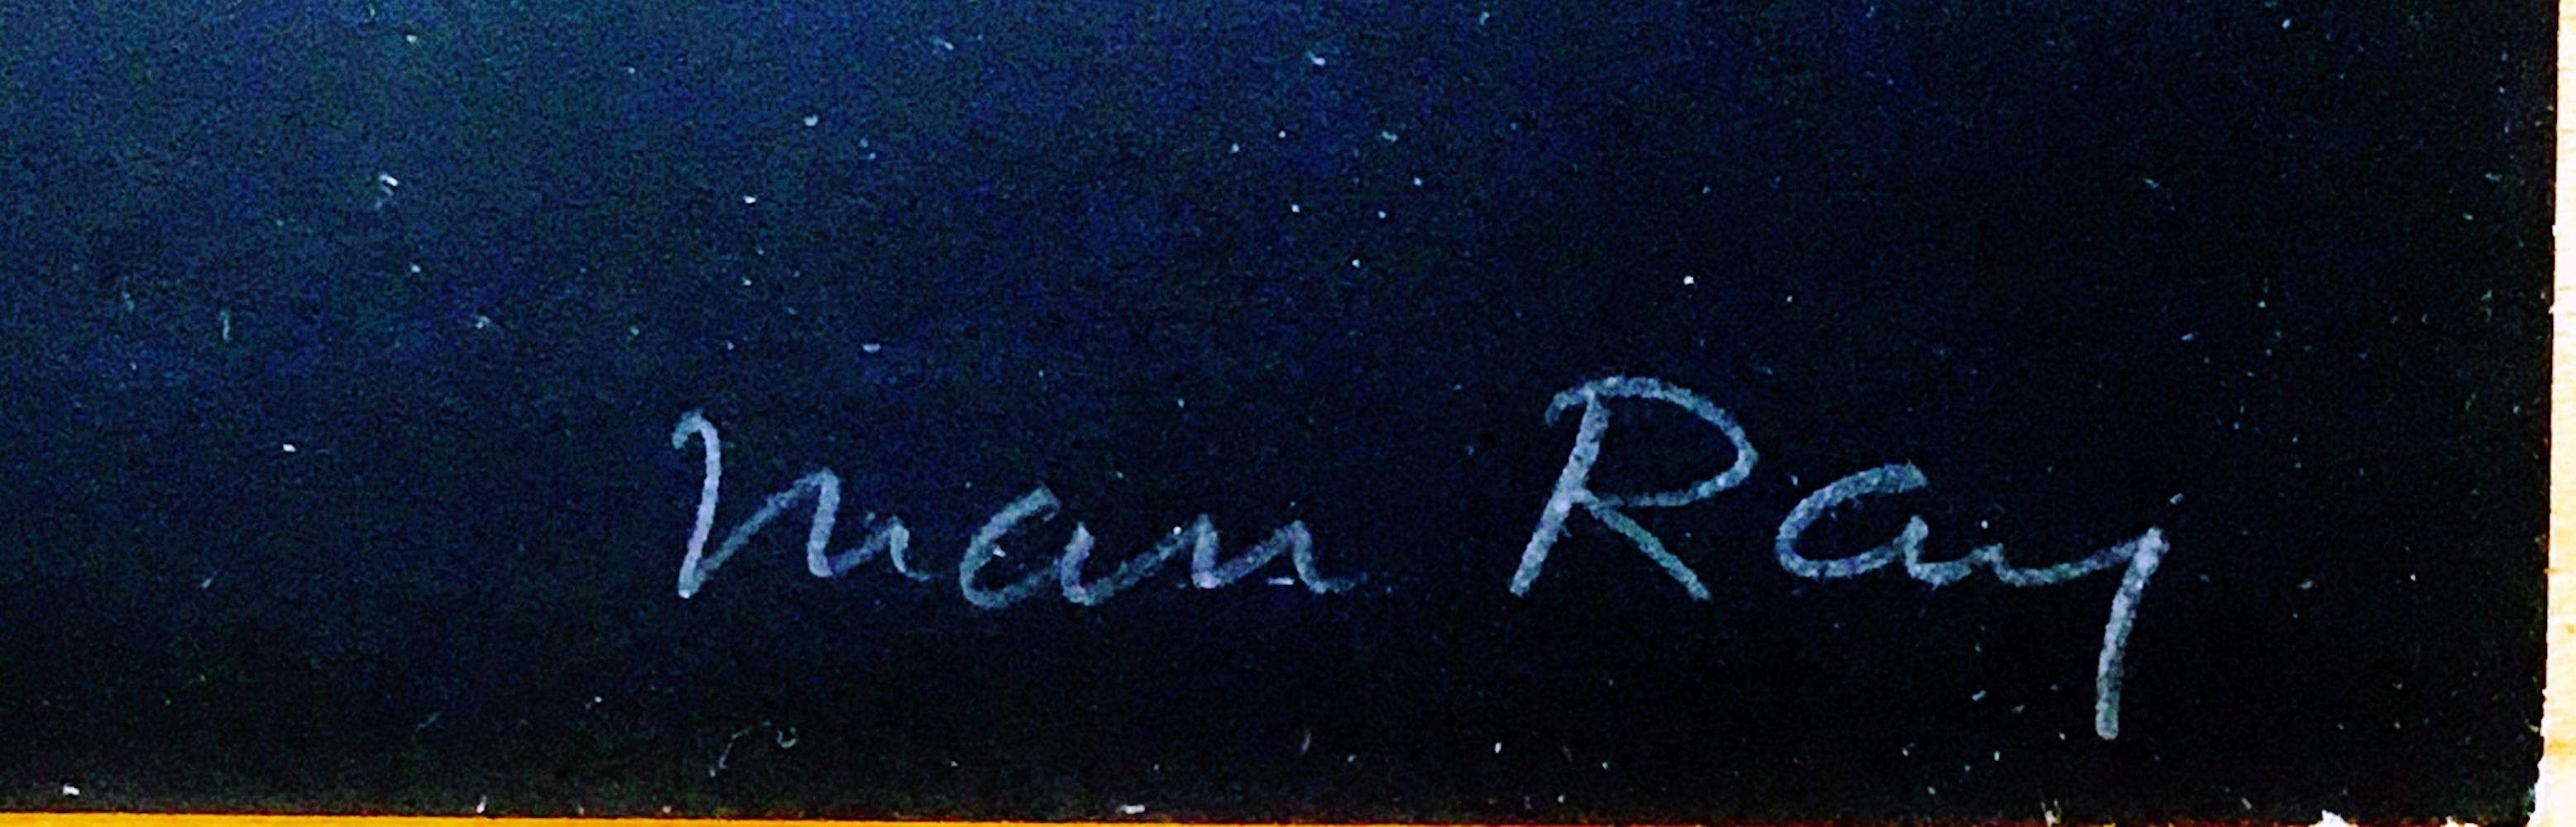 Man Ray
Alphabet Pour Adultes (Alphabet für Erwachsene), 1970
Farbserigrafie und Lithografie auf Papier, montiert auf Holzfurnier, montiert auf Karton. Handsigniert. Nummeriert. Datiert. 
Handsigniert, nummeriert 45/150 von Man Ray auf der unteren